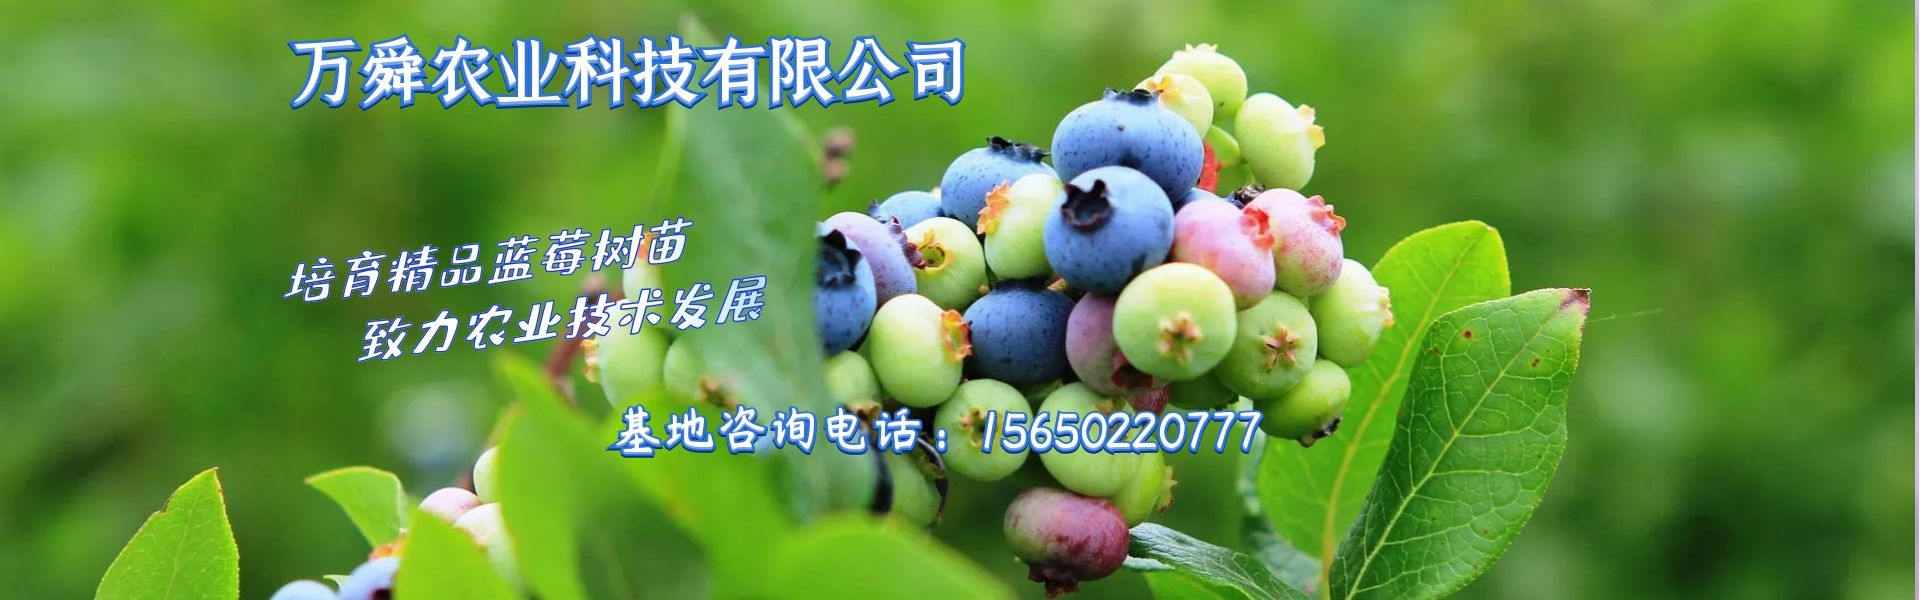 蓝莓苗_蓝莓种苗_新品种蓝莓树苗|批发|价格_万舜苗木基地